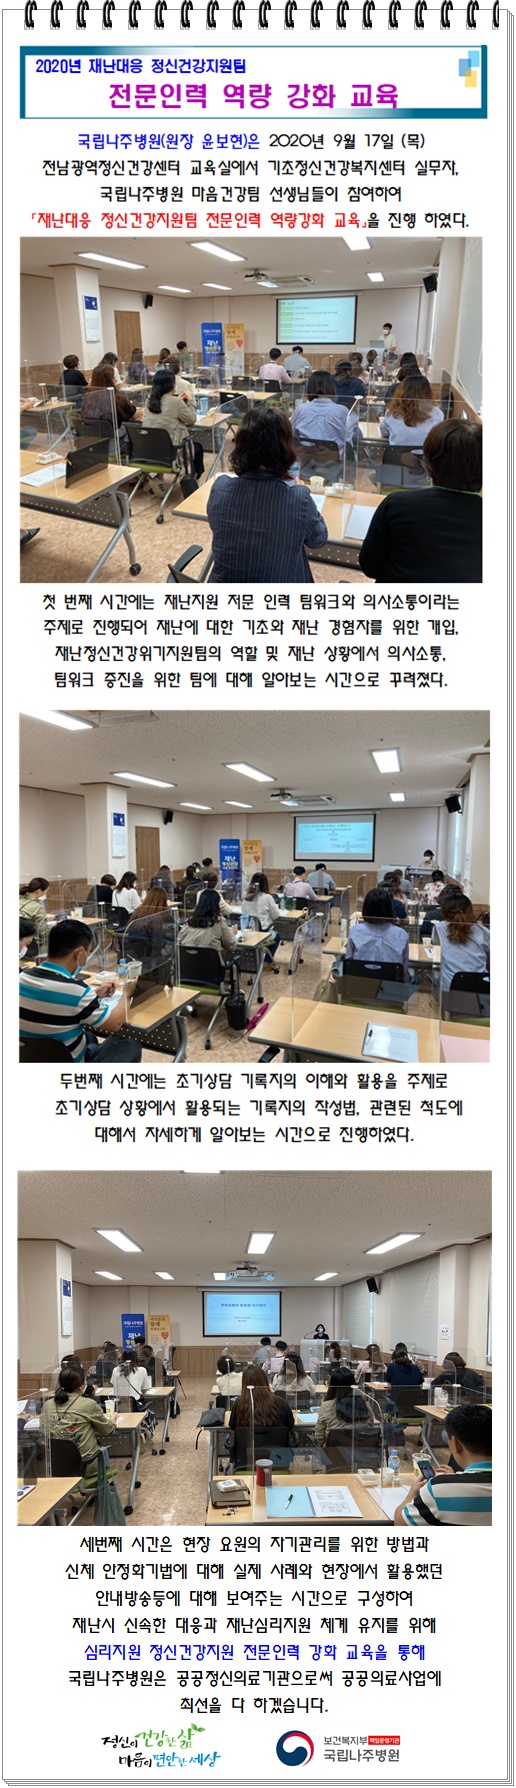 2020년 재난대응 정신건강지원팀 전문인력 역량 강화 교육 하단참고